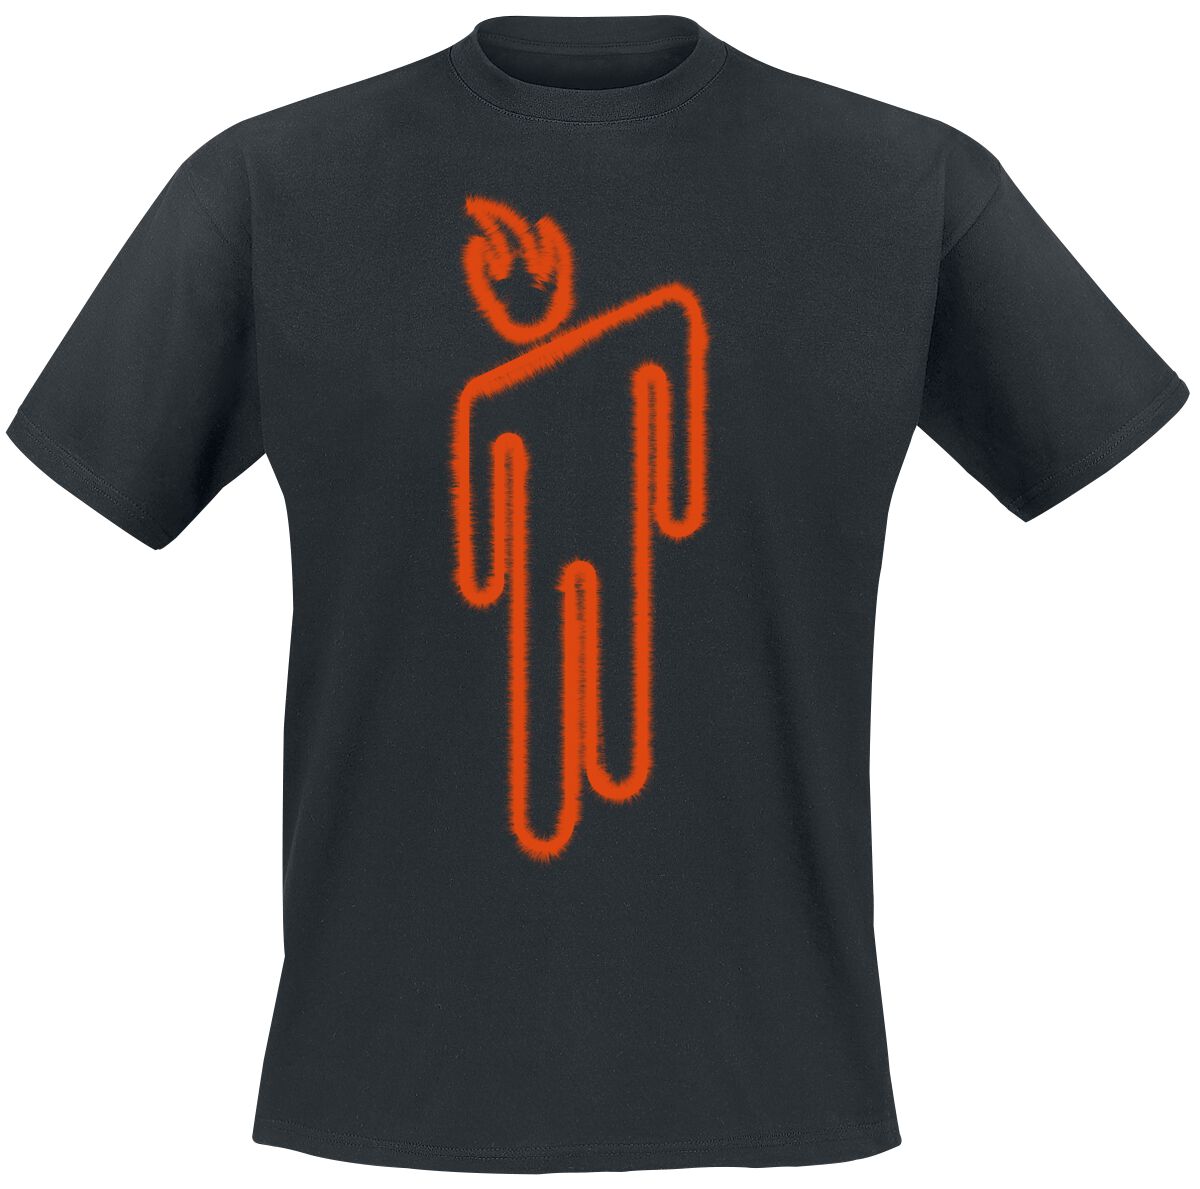 Billie Eilish T-Shirt - Fire Blohsh - S bis M - für Männer - Größe S - schwarz  - Lizenziertes Merchandise!